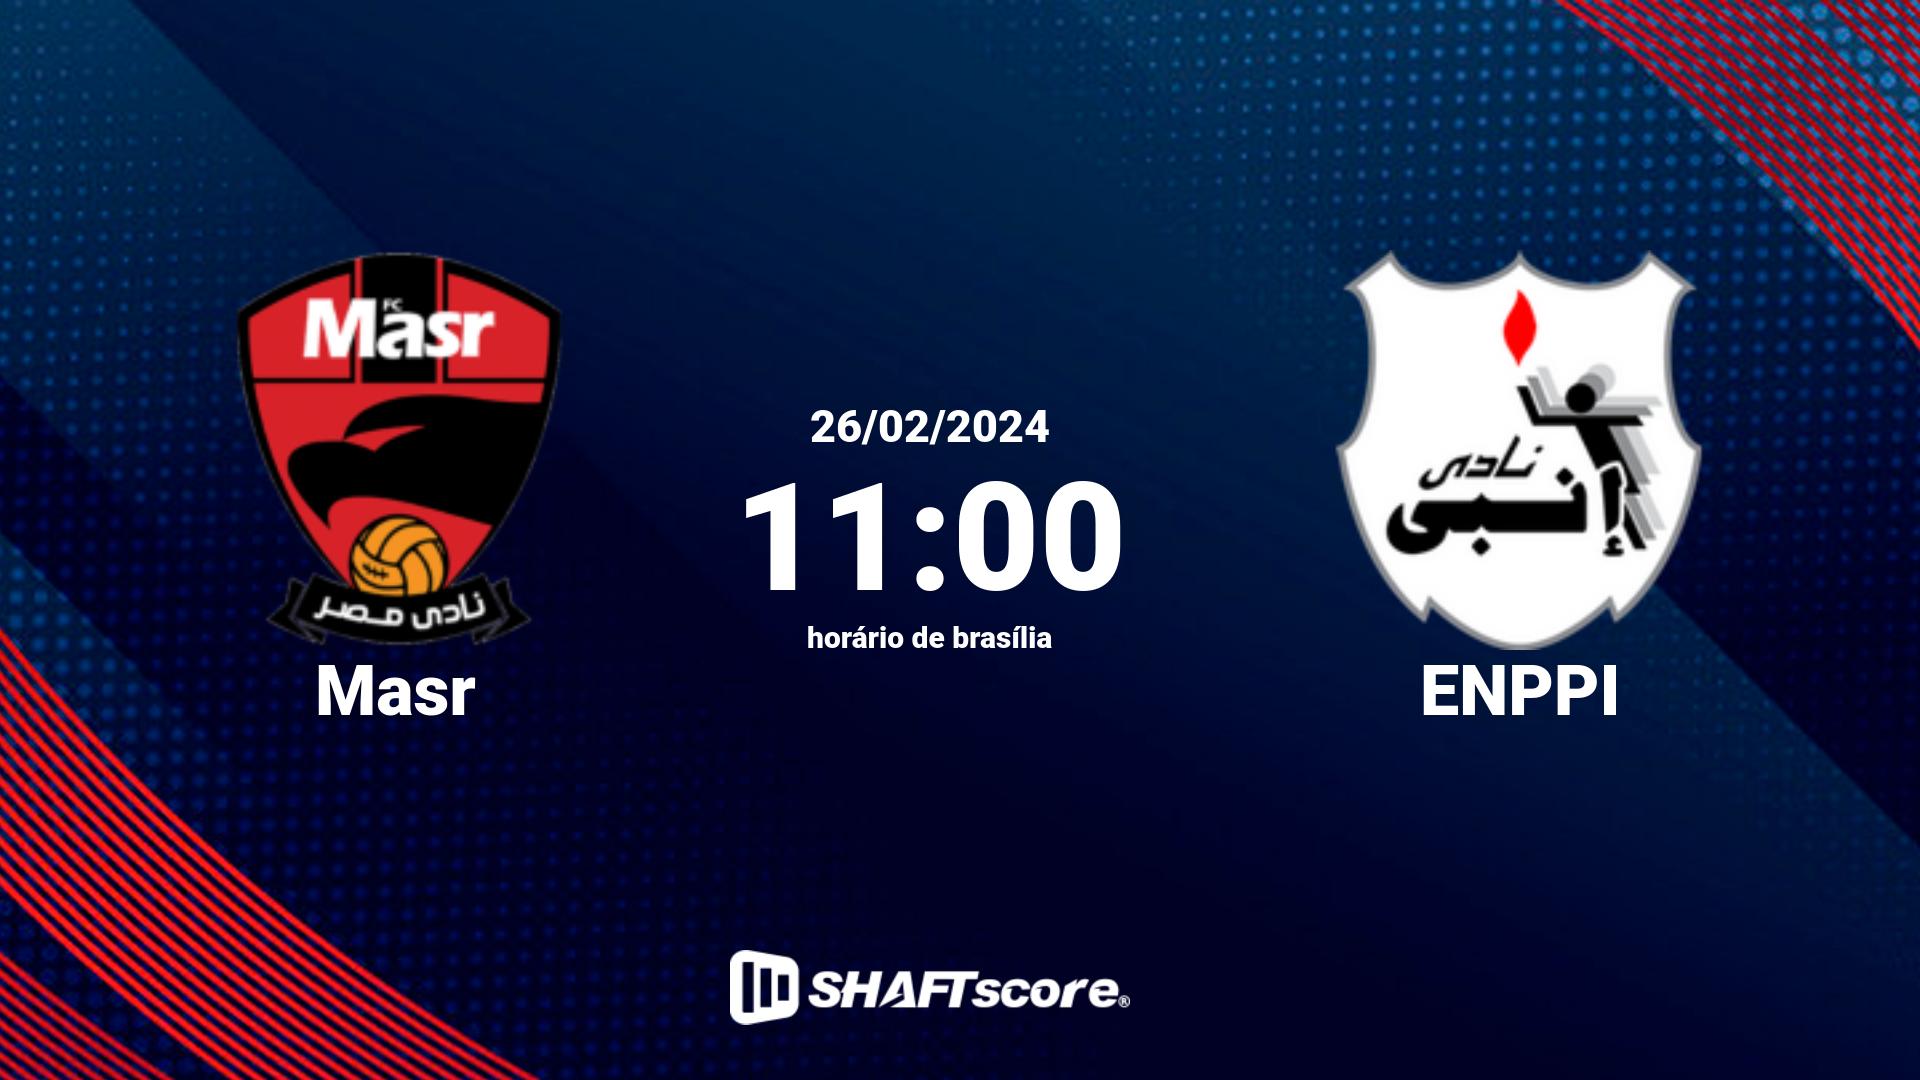 Estatísticas do jogo Masr vs ENPPI 26.02 11:00